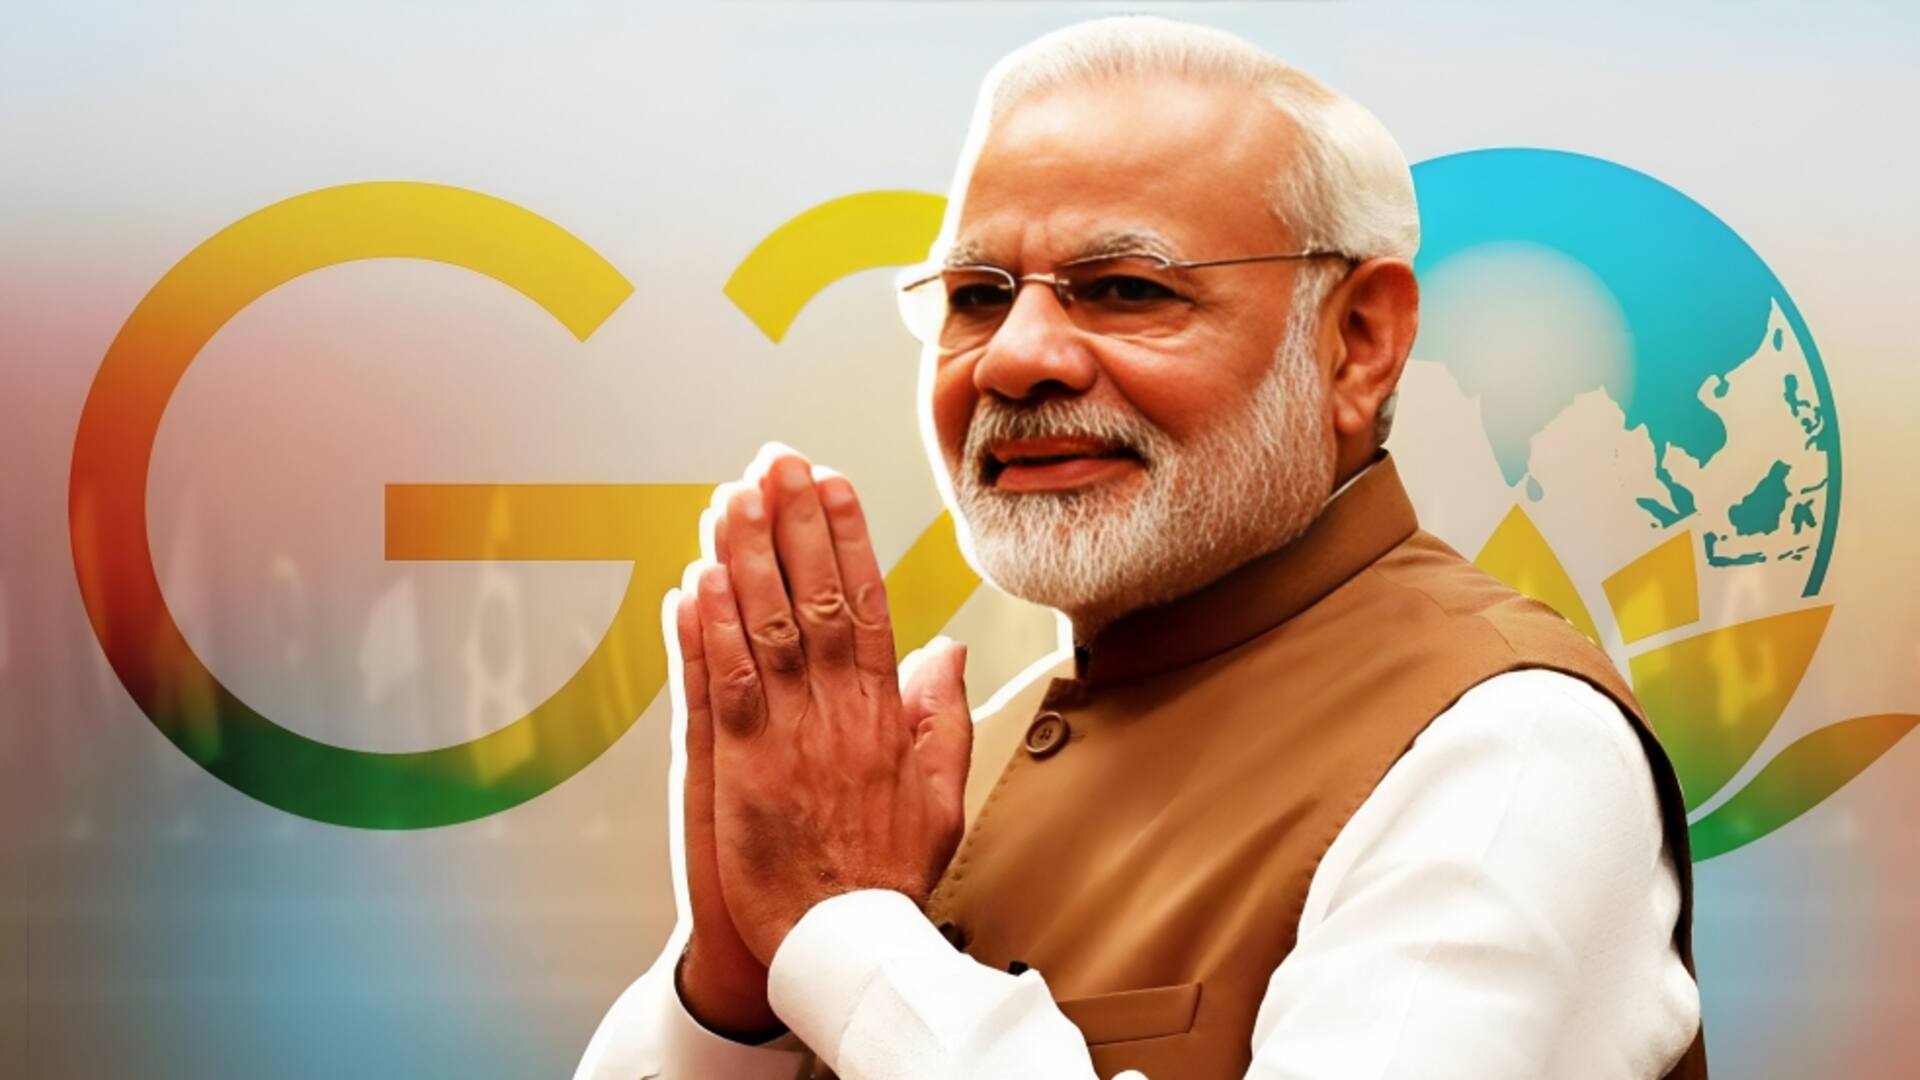 भारत आज करेगा ऑनलाइन G-20 शिखर सम्मेलन की मेजबानी, चीनी राष्ट्रपति नहीं होंगे शामिल